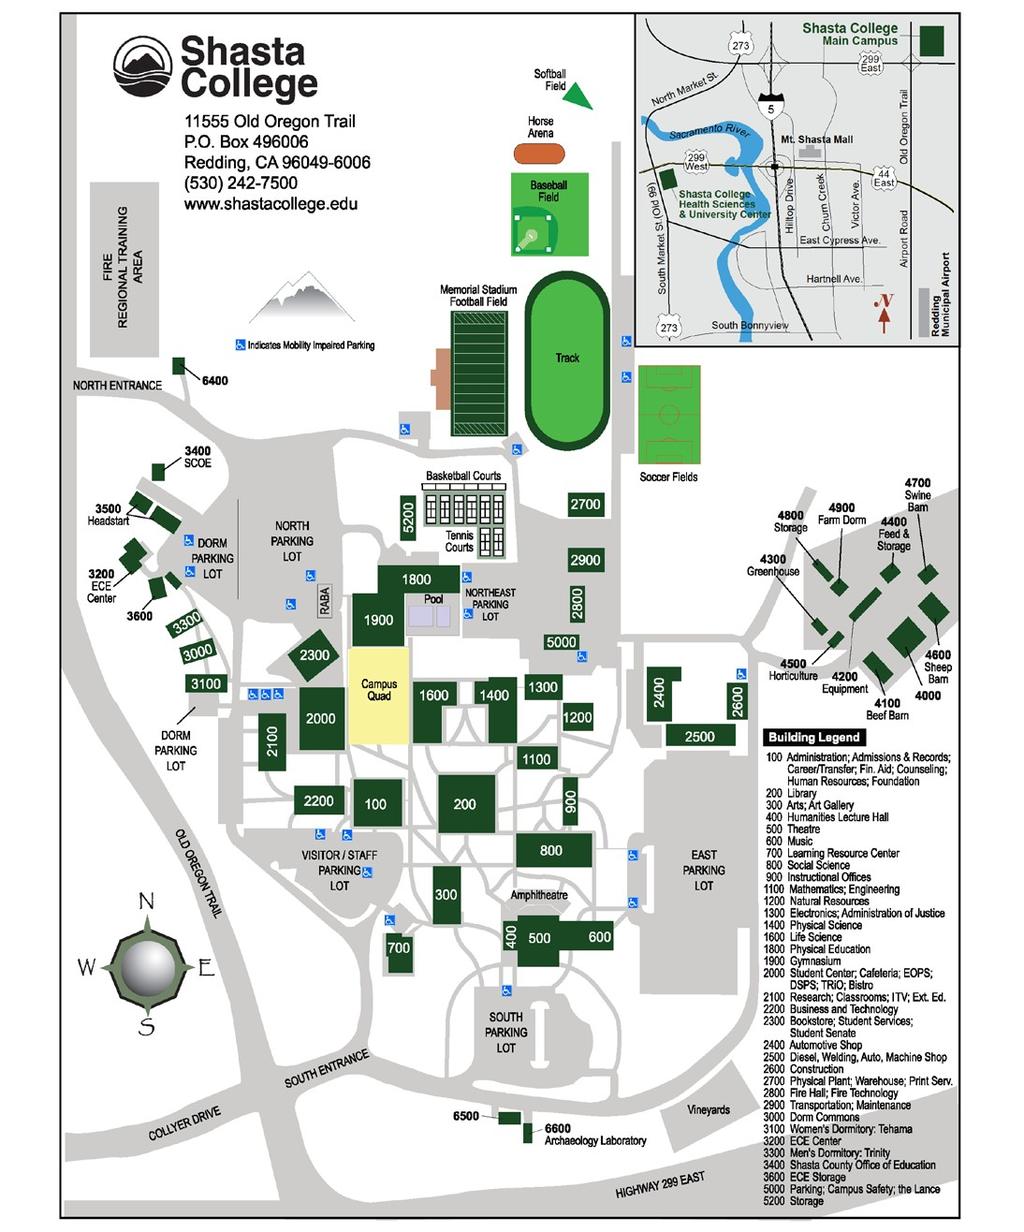 APPENDIX C Shasta College Main Campus